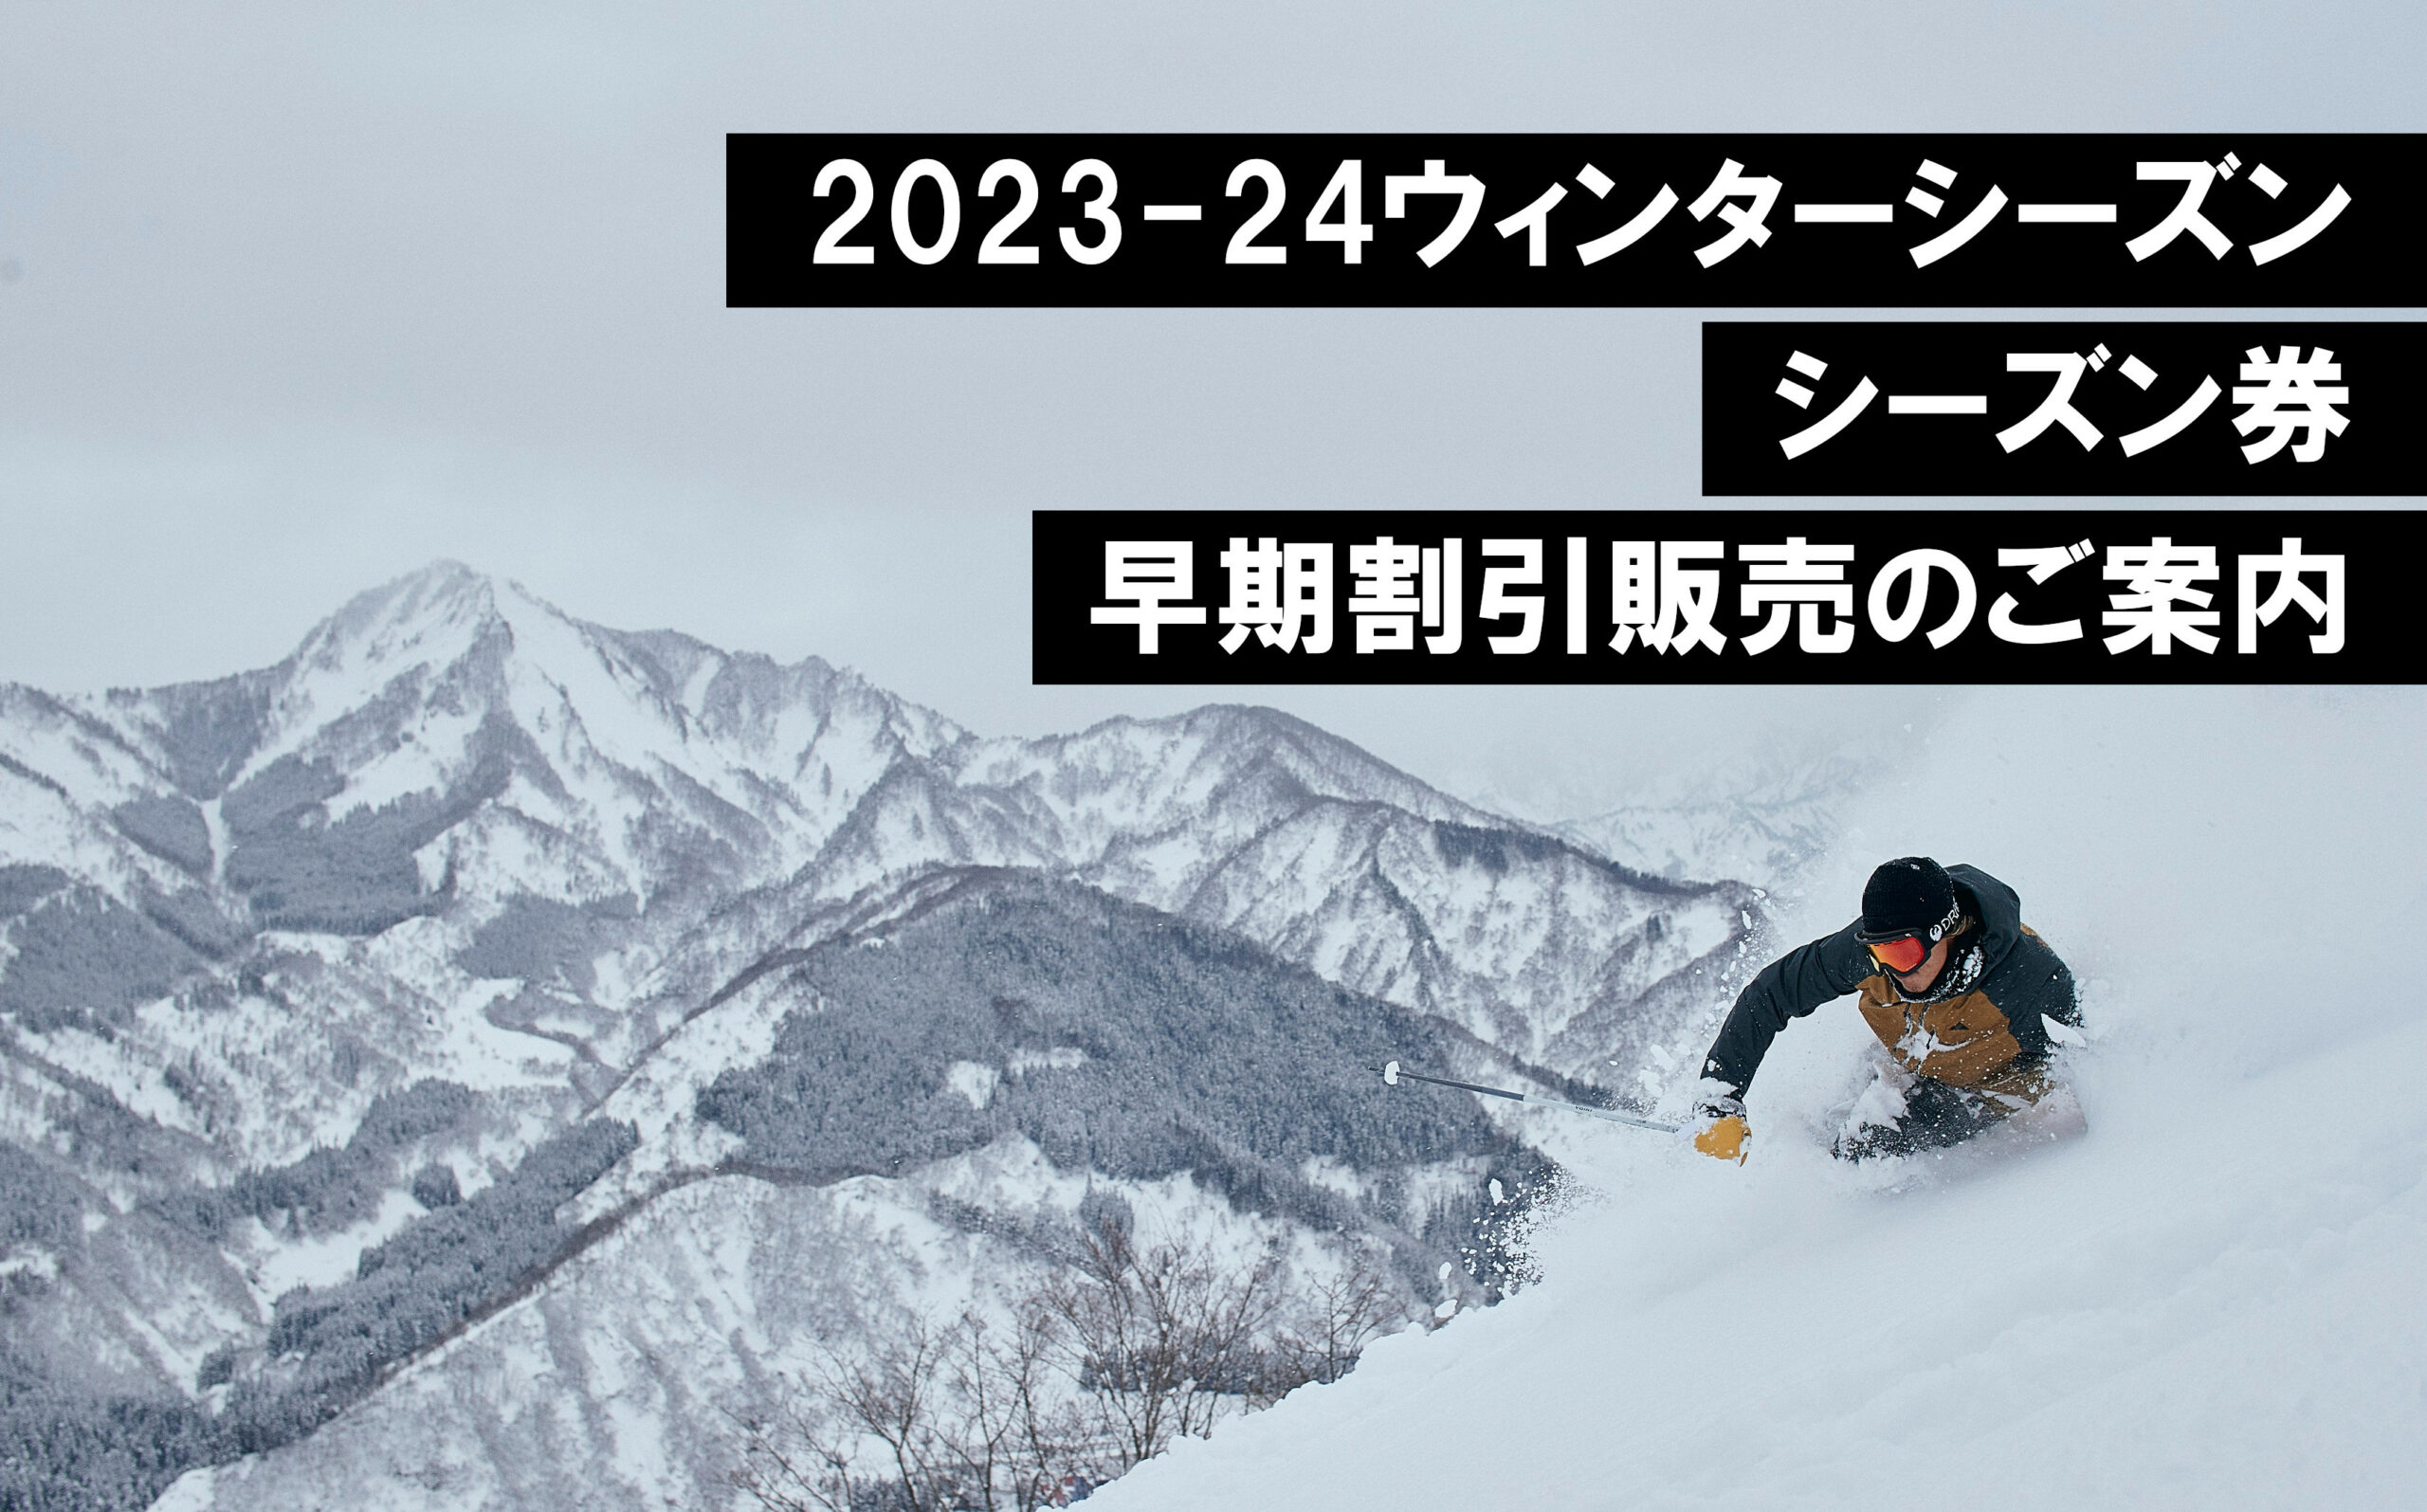 石打丸山スキー場 23-24 リフト券 - スキー場